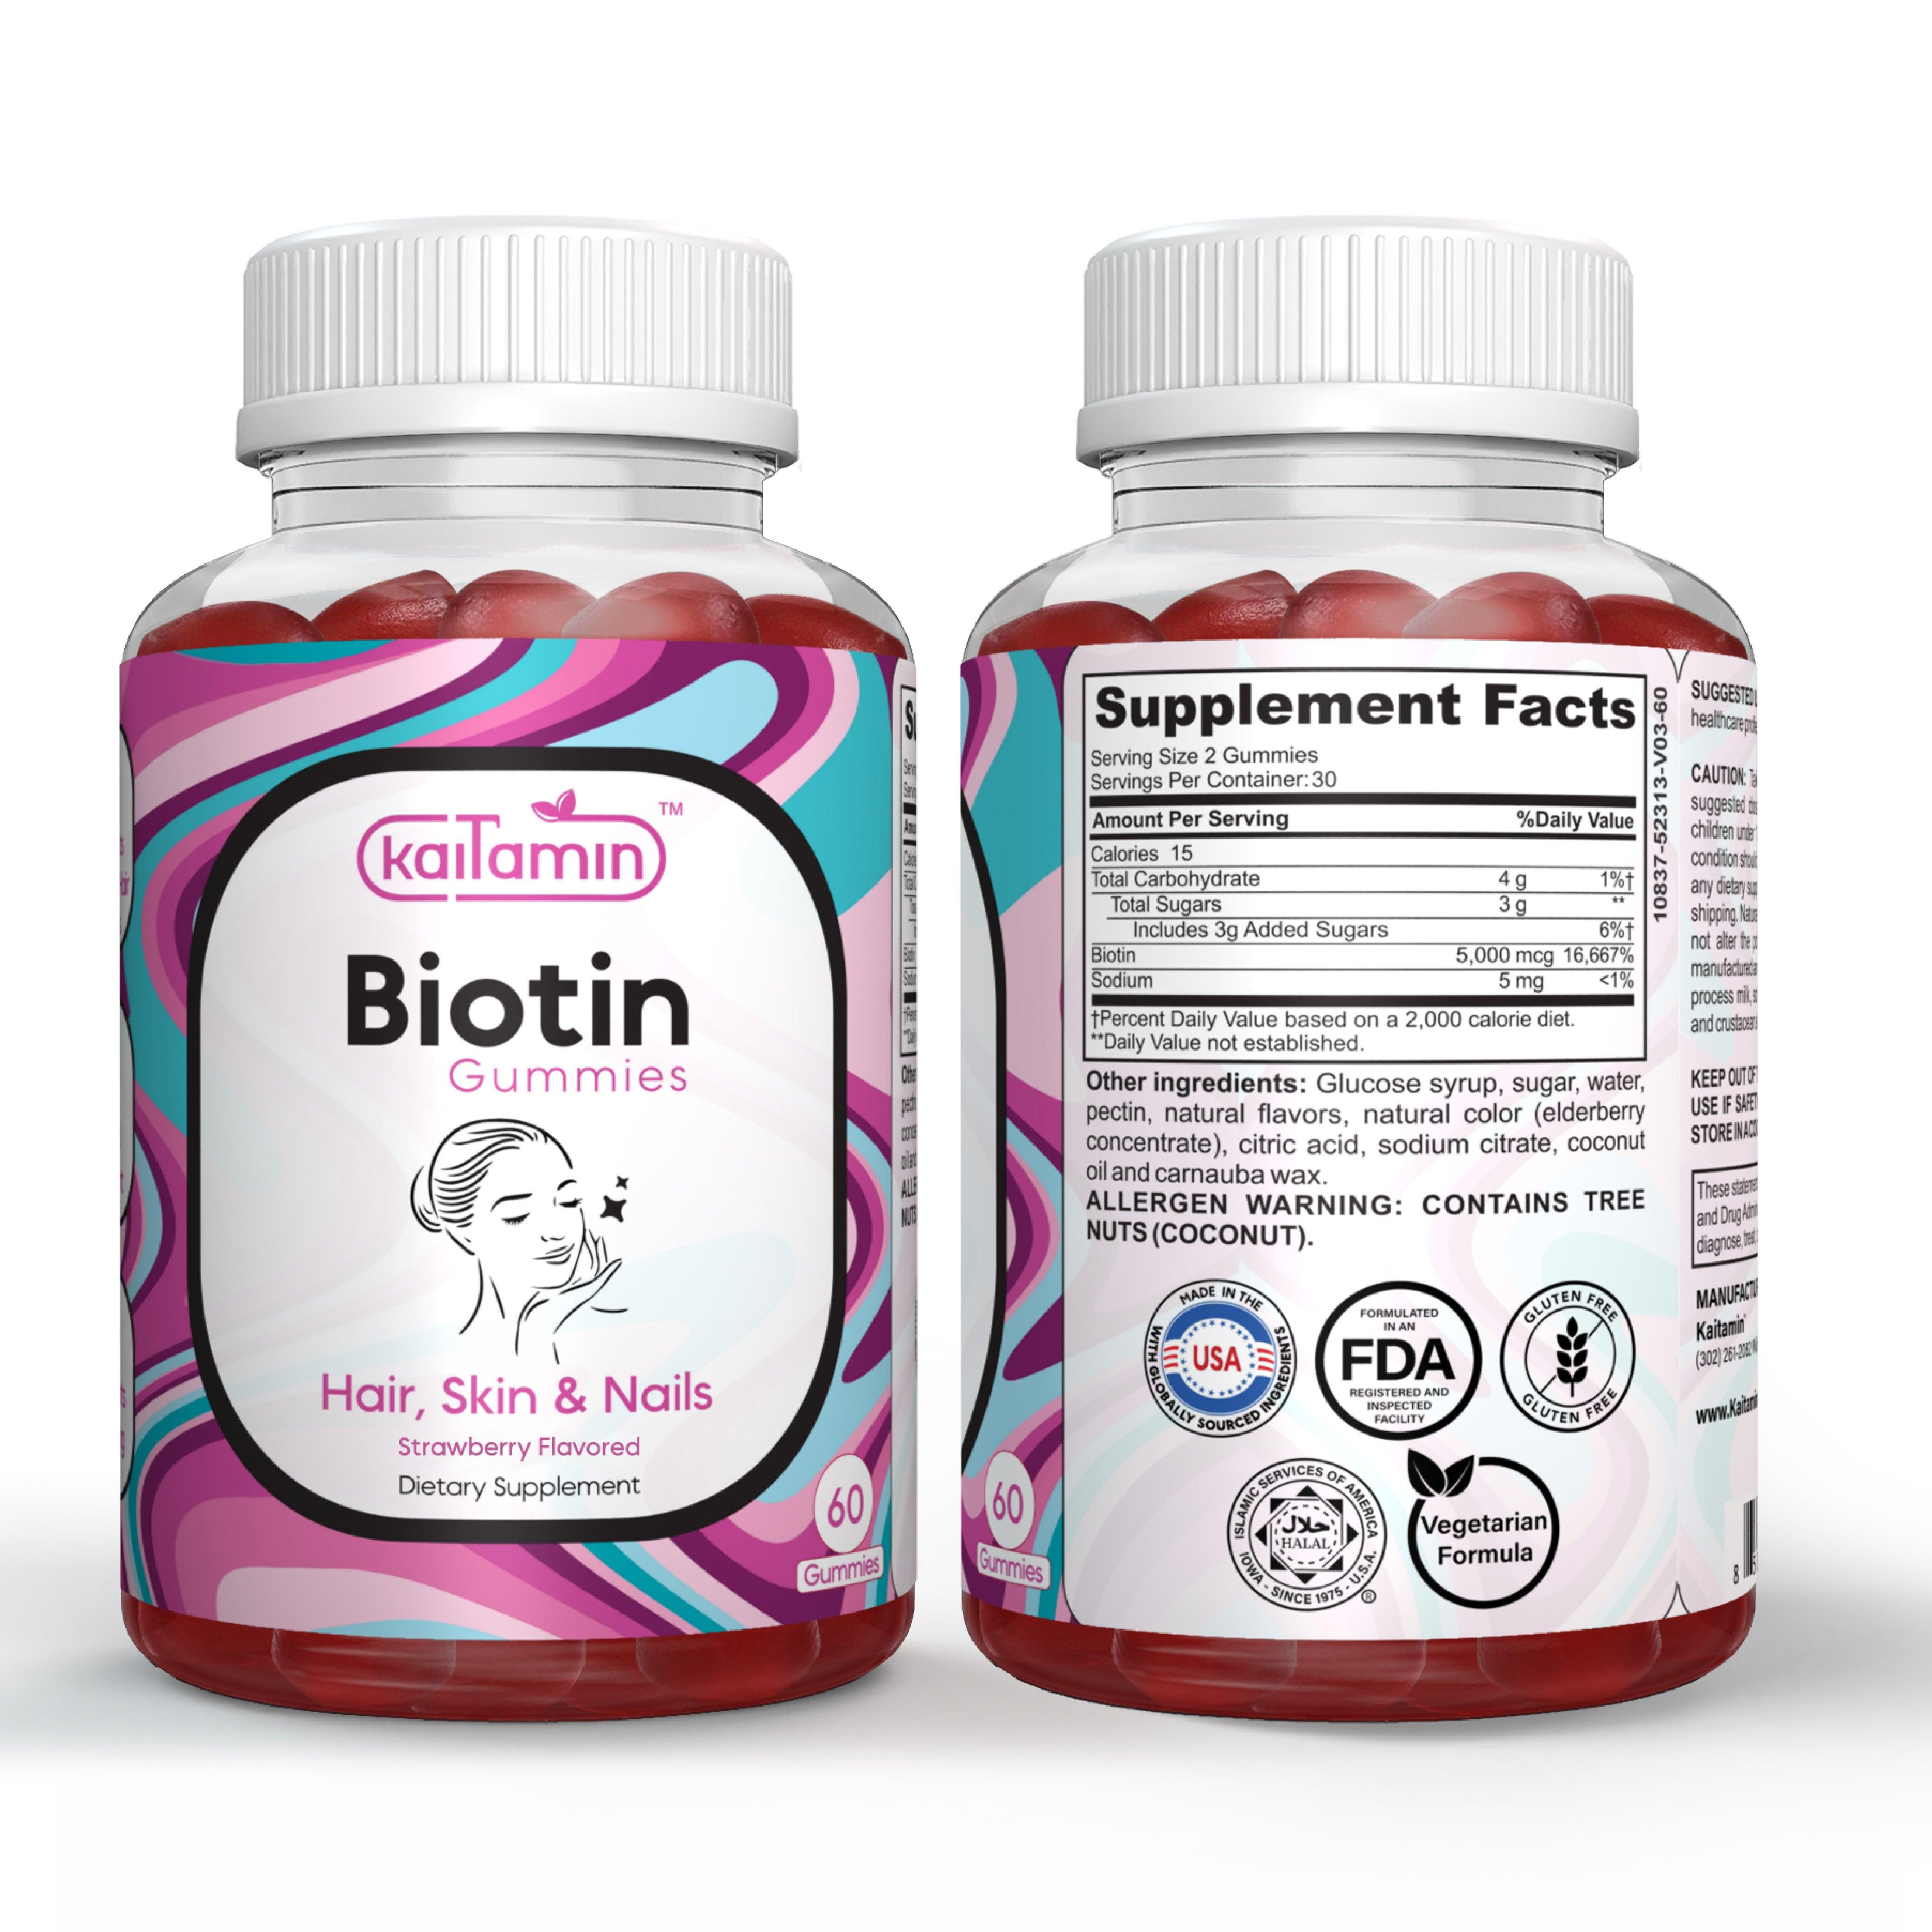 Biotin Gummies for Hair Skin & Nails -5000mcg per Serving - 60 Gummies - Kaitamin